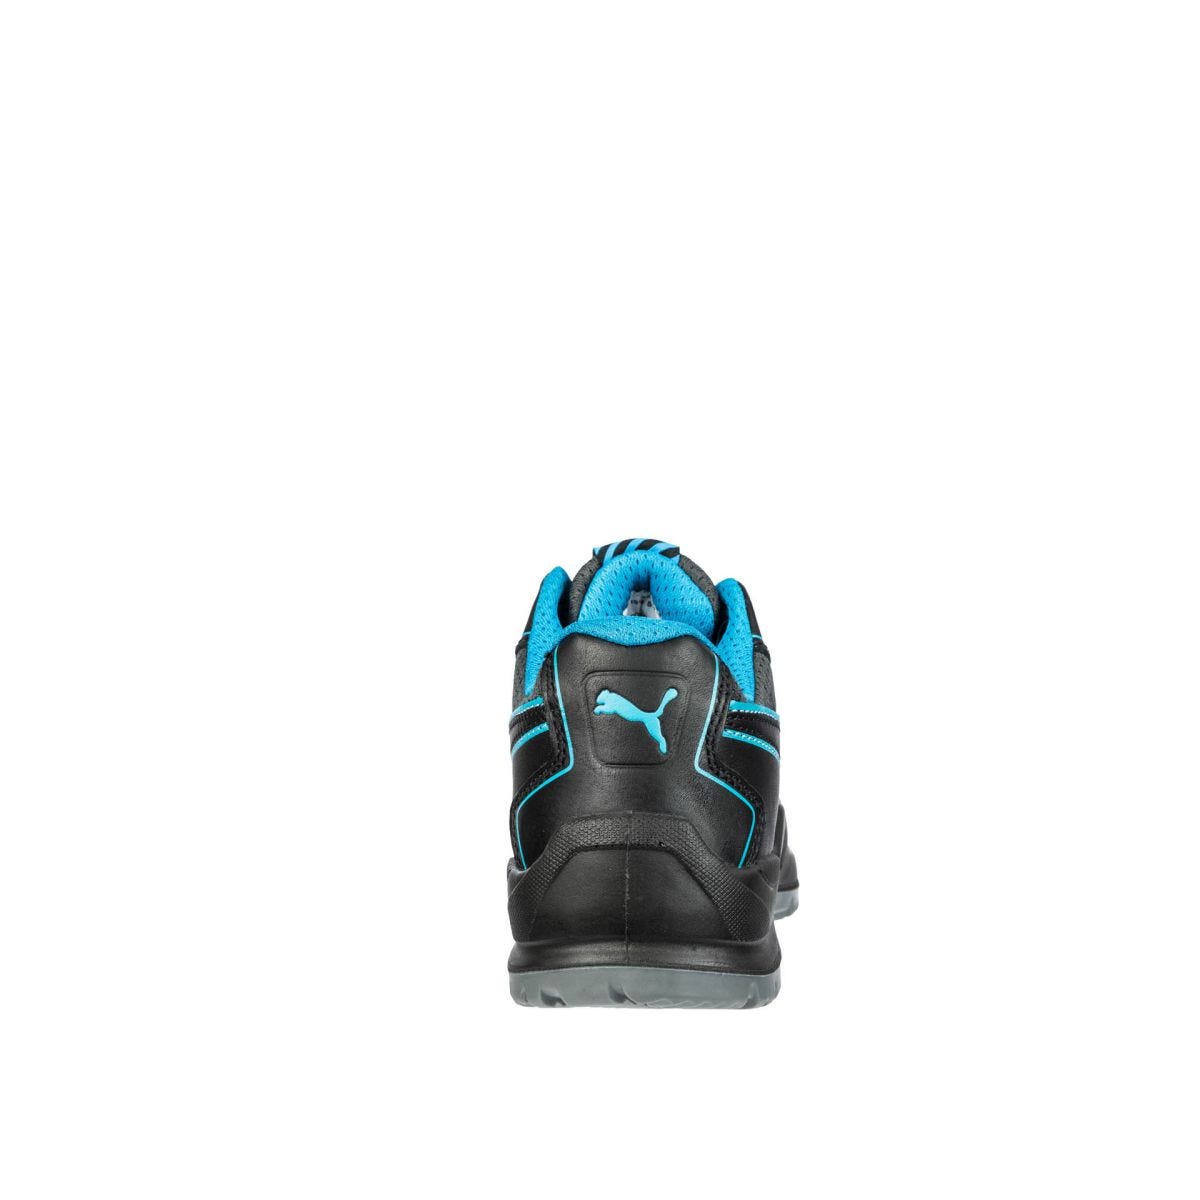 Chaussures de sécurité Niobe low WNS S3 ESD SRC bleu - Puma - Taille 38 1